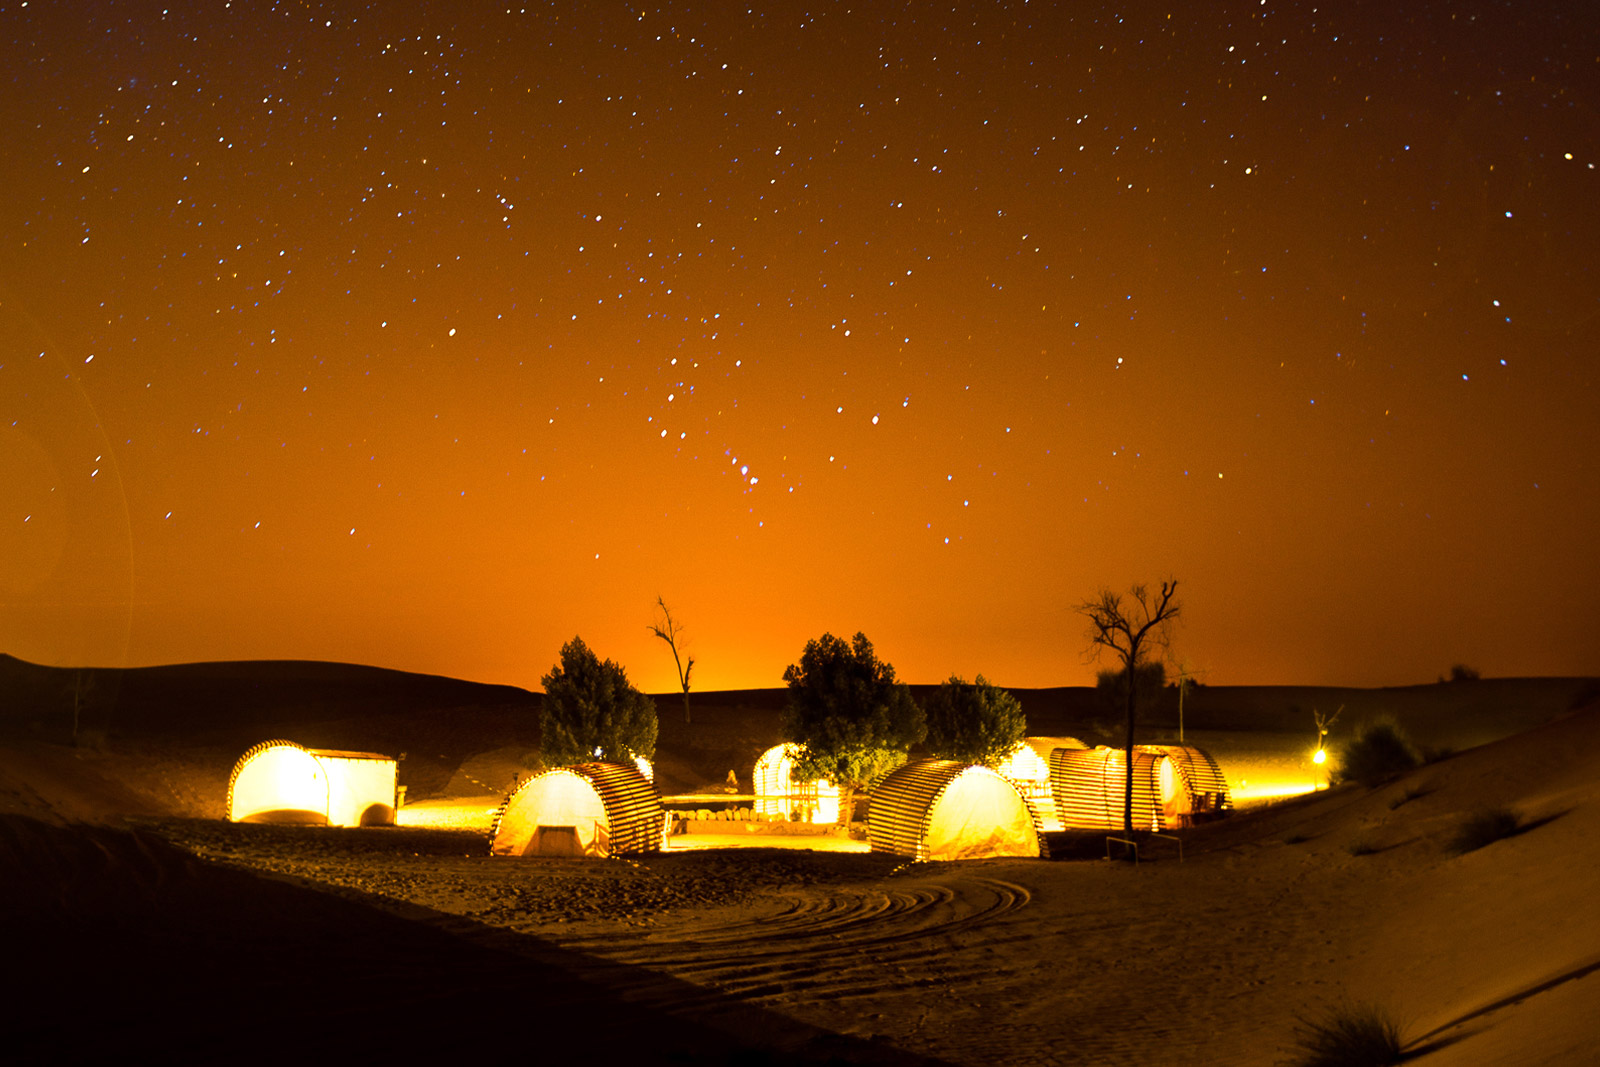 沙漠星星酒店璀璨夜空 - 中卫景点 - 华侨城旅游网